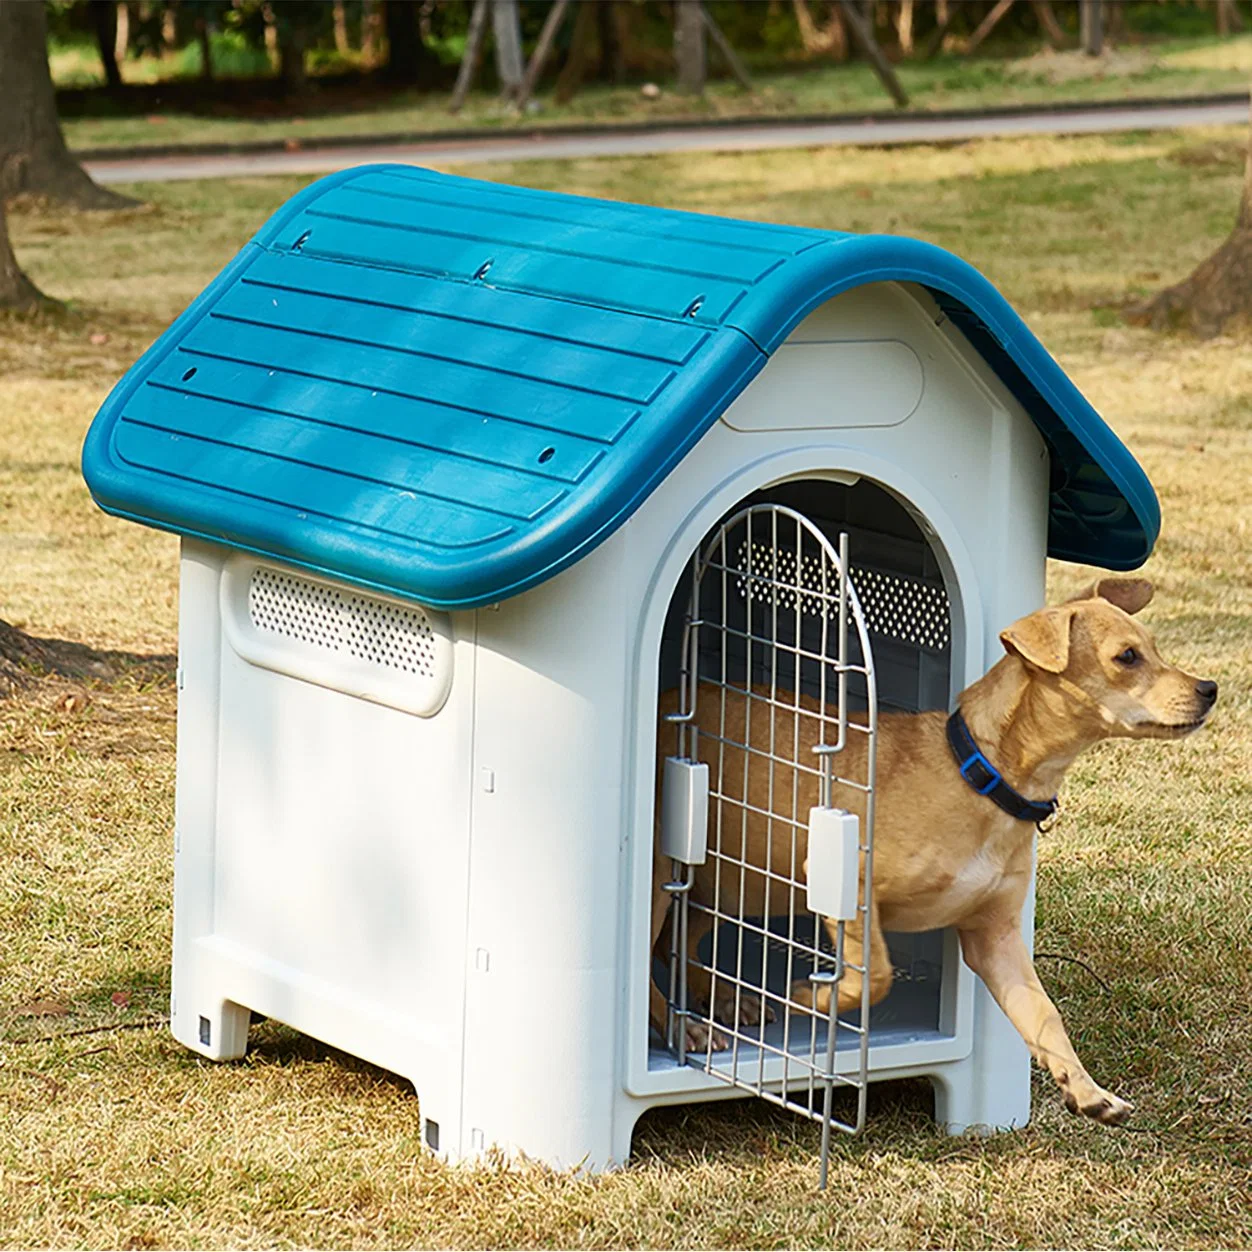 Écologique imperméable bon marché moderne petit/chiot chien amovible cage d'extérieur confortable Ventilate Luxury plastique cage chien maison pour animaux de jardin